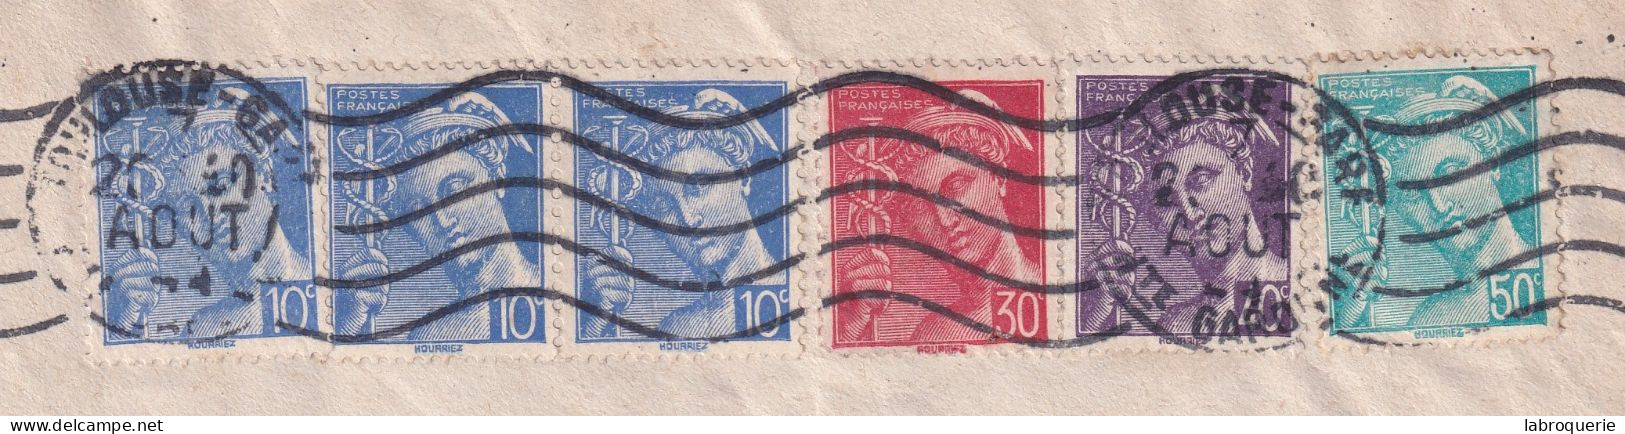 FRA - AFFRANCHISSEMENT "MERCURE" - TARIF DU 5/1/1942 - TOULOUSE > MARSEILLE - Postal Rates